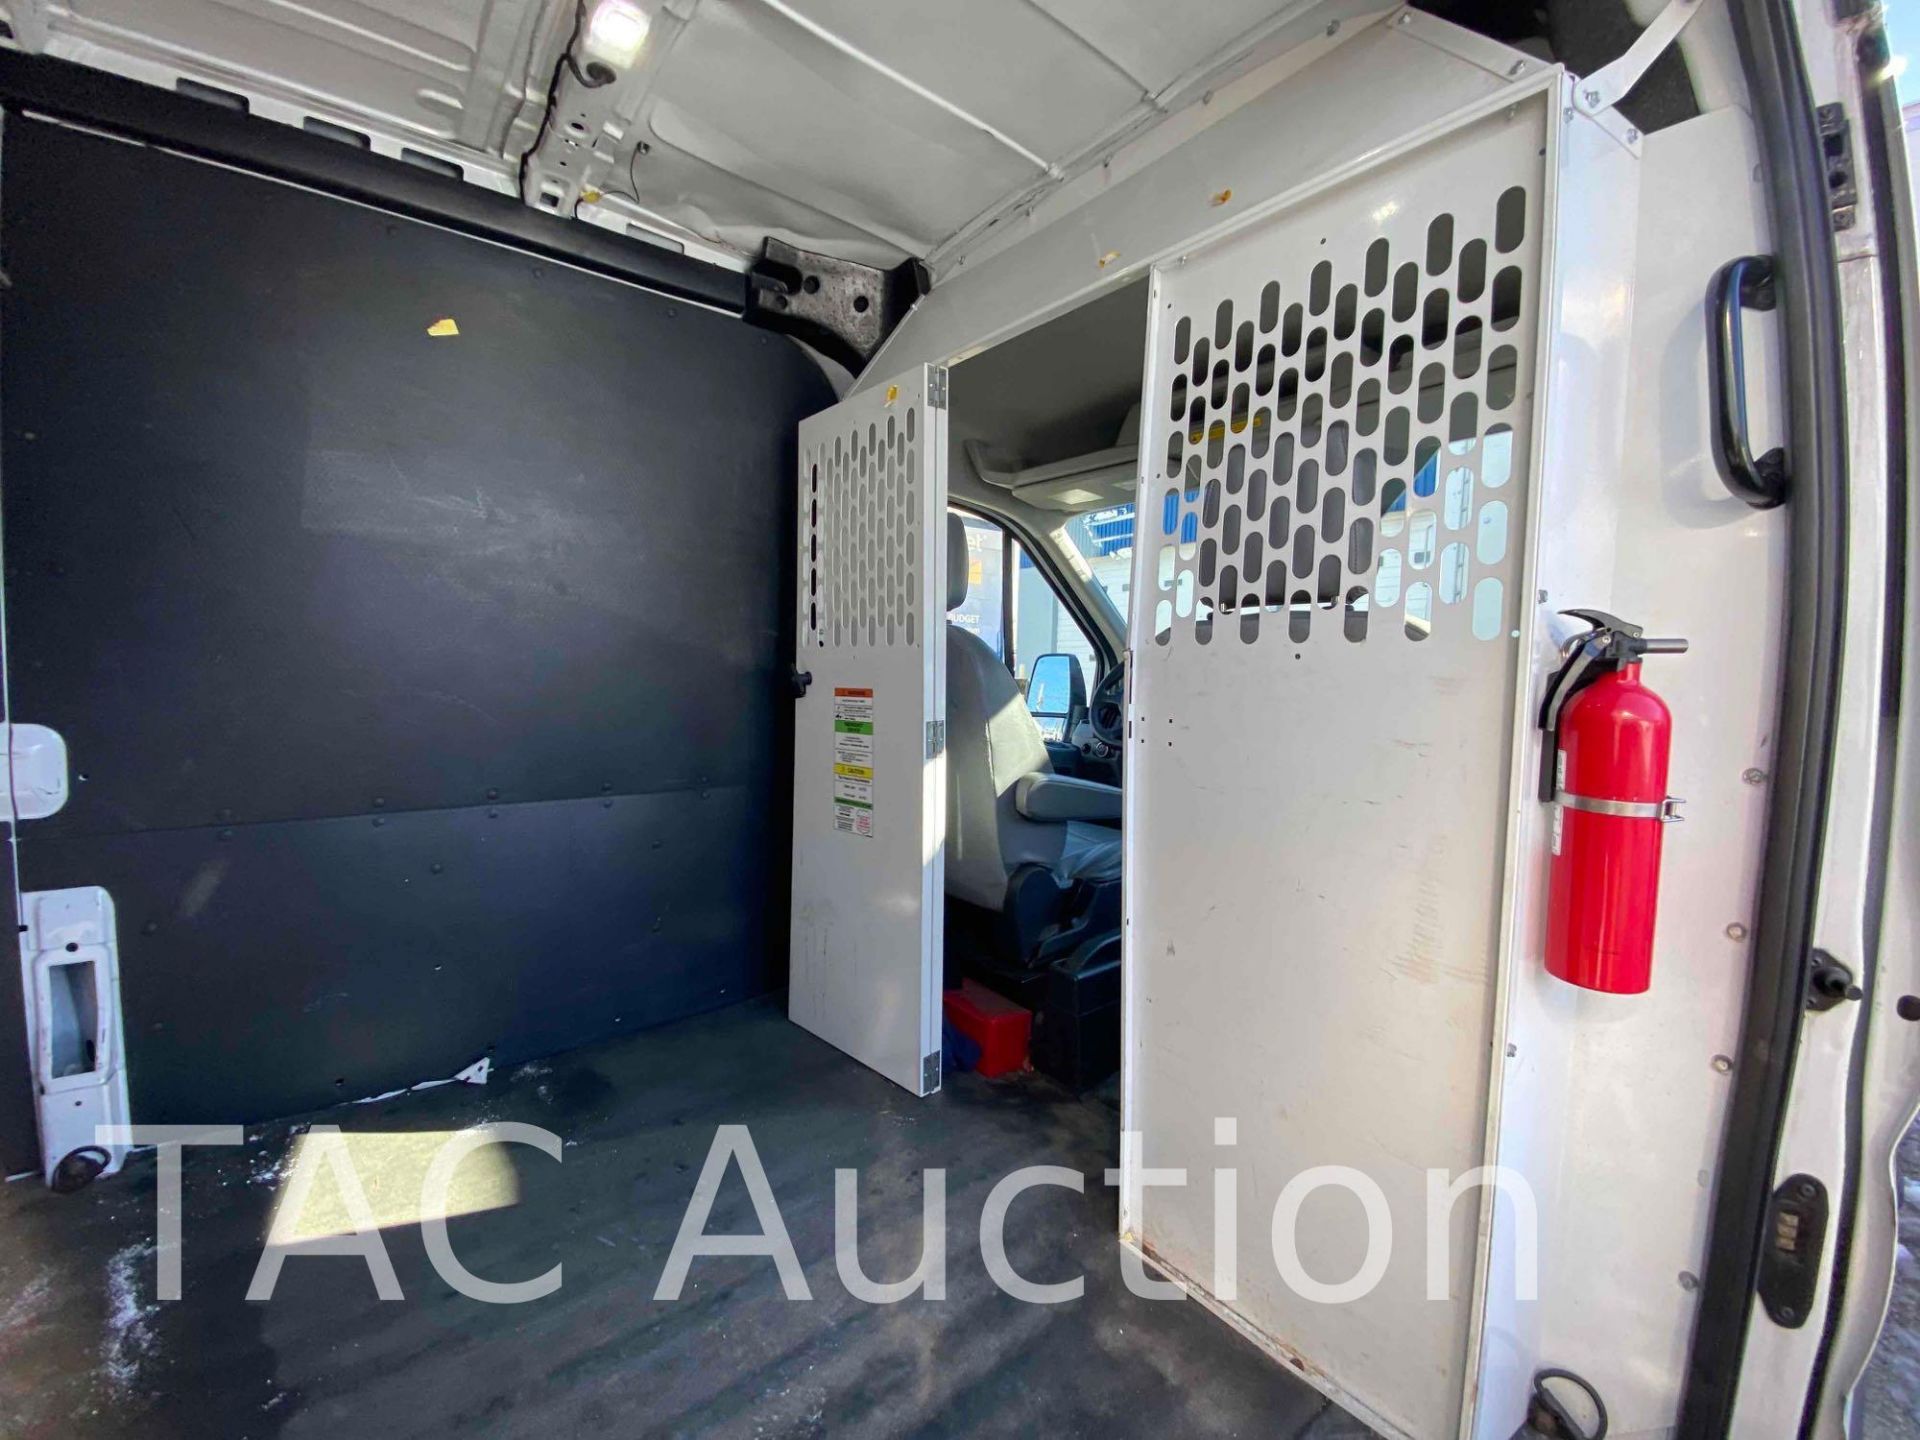 2019 Ford Transit 150 Cargo Van - Image 18 of 48